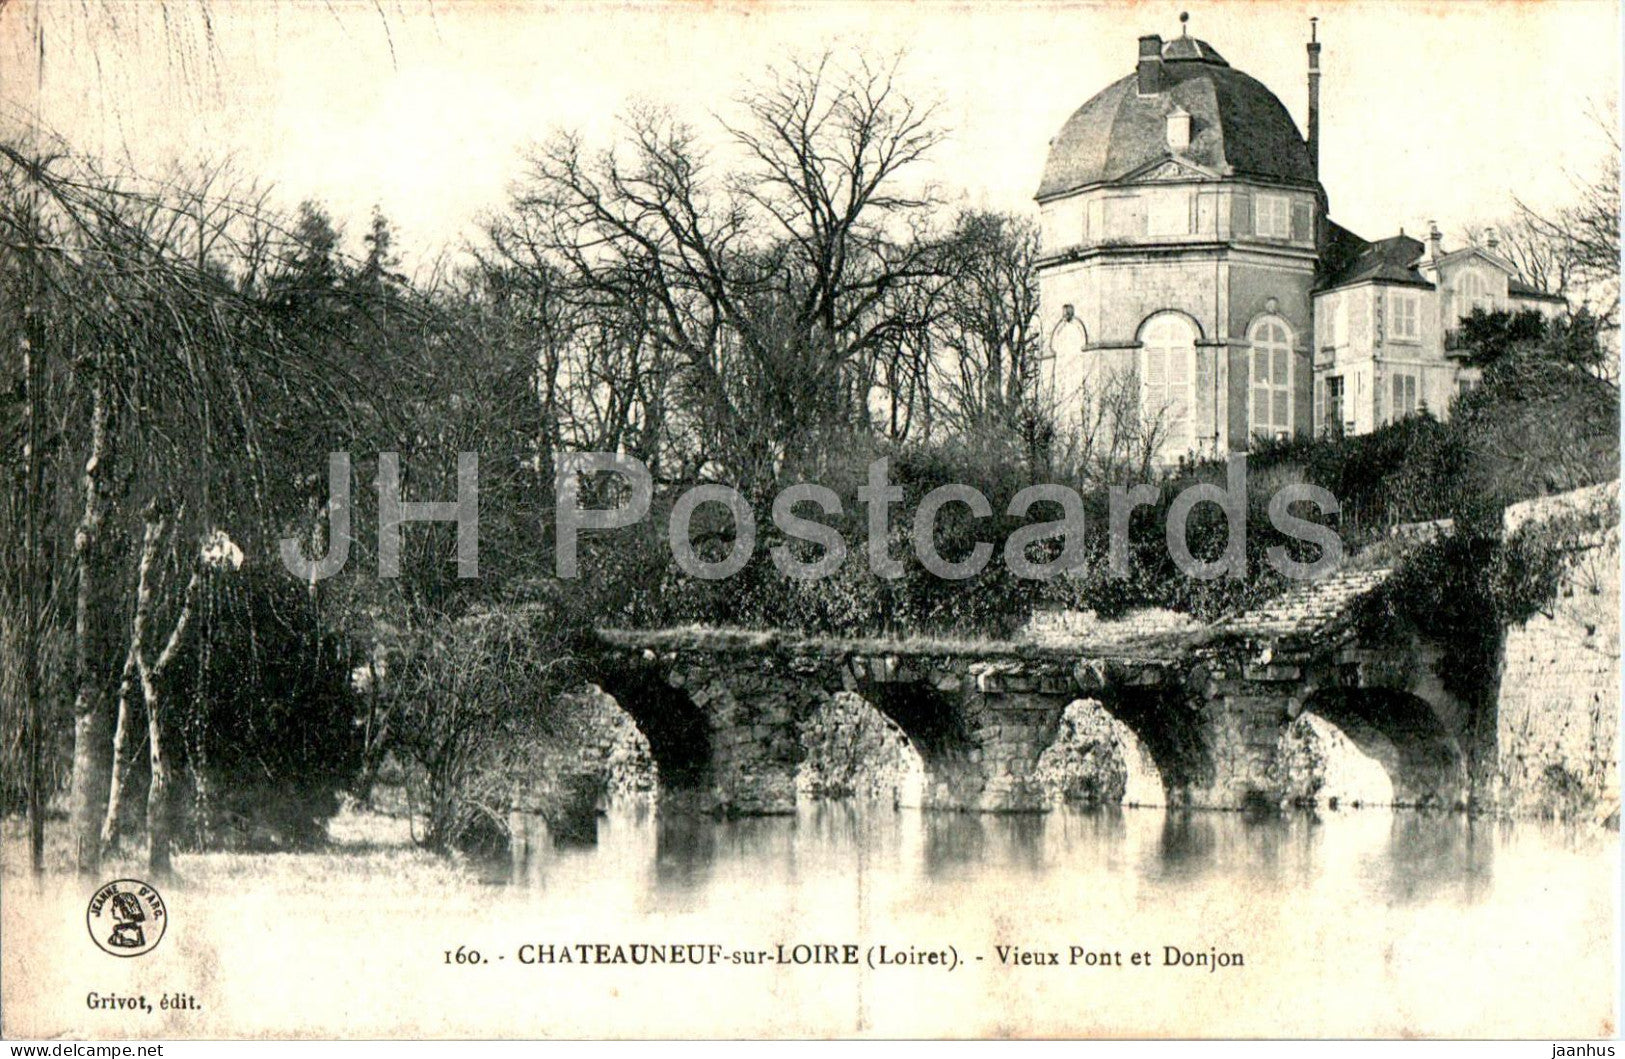 Chateauneuf sur Loire - Vieux Pont et Donjon - 160 - old postcard - France - used - JH Postcards